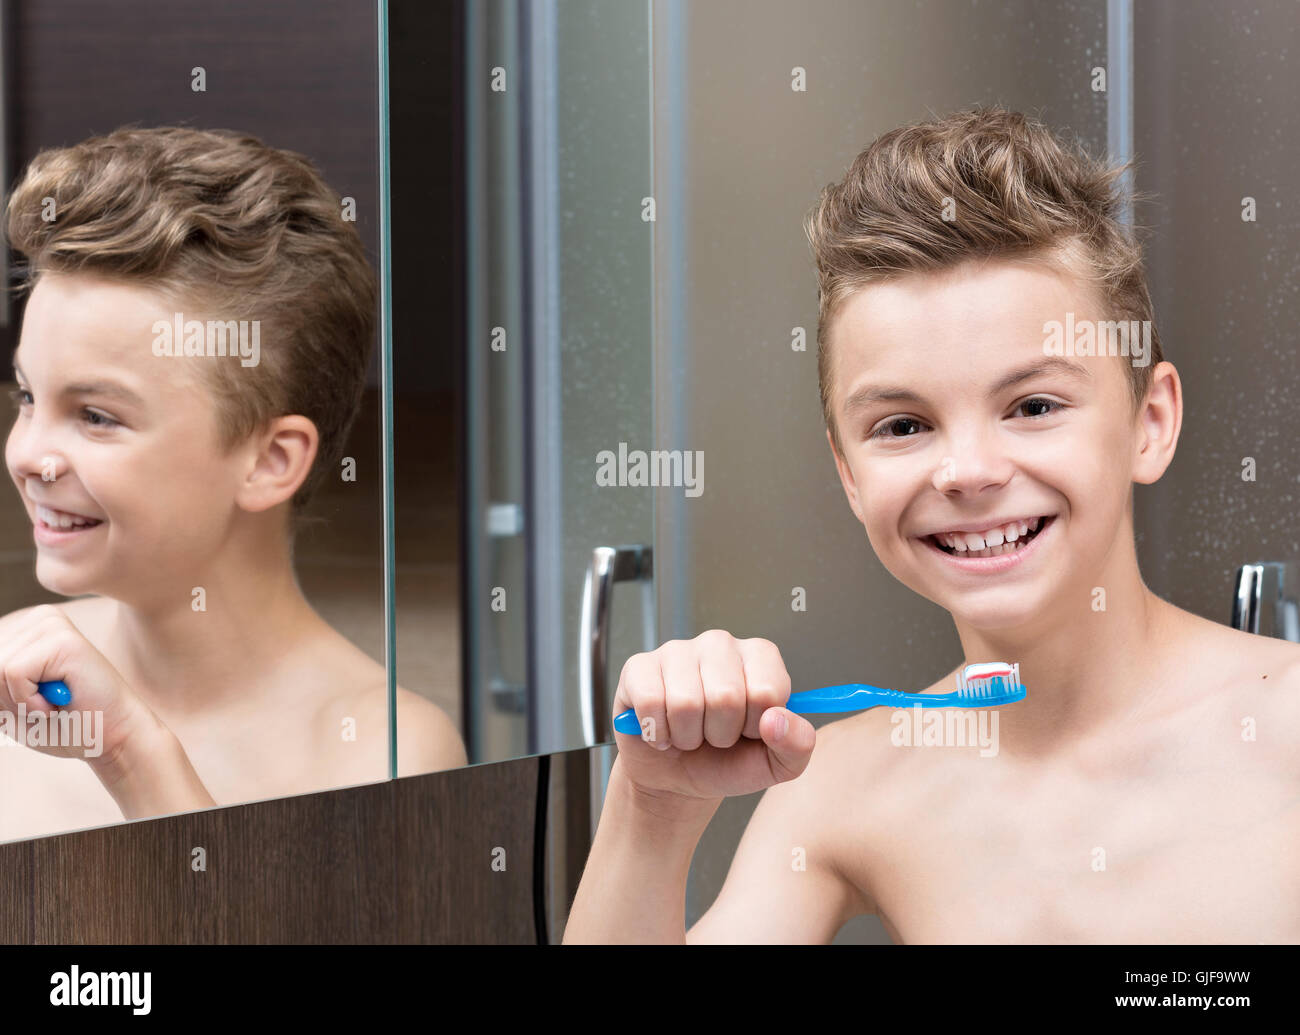 Teen boy brushing teeth Stock Photo